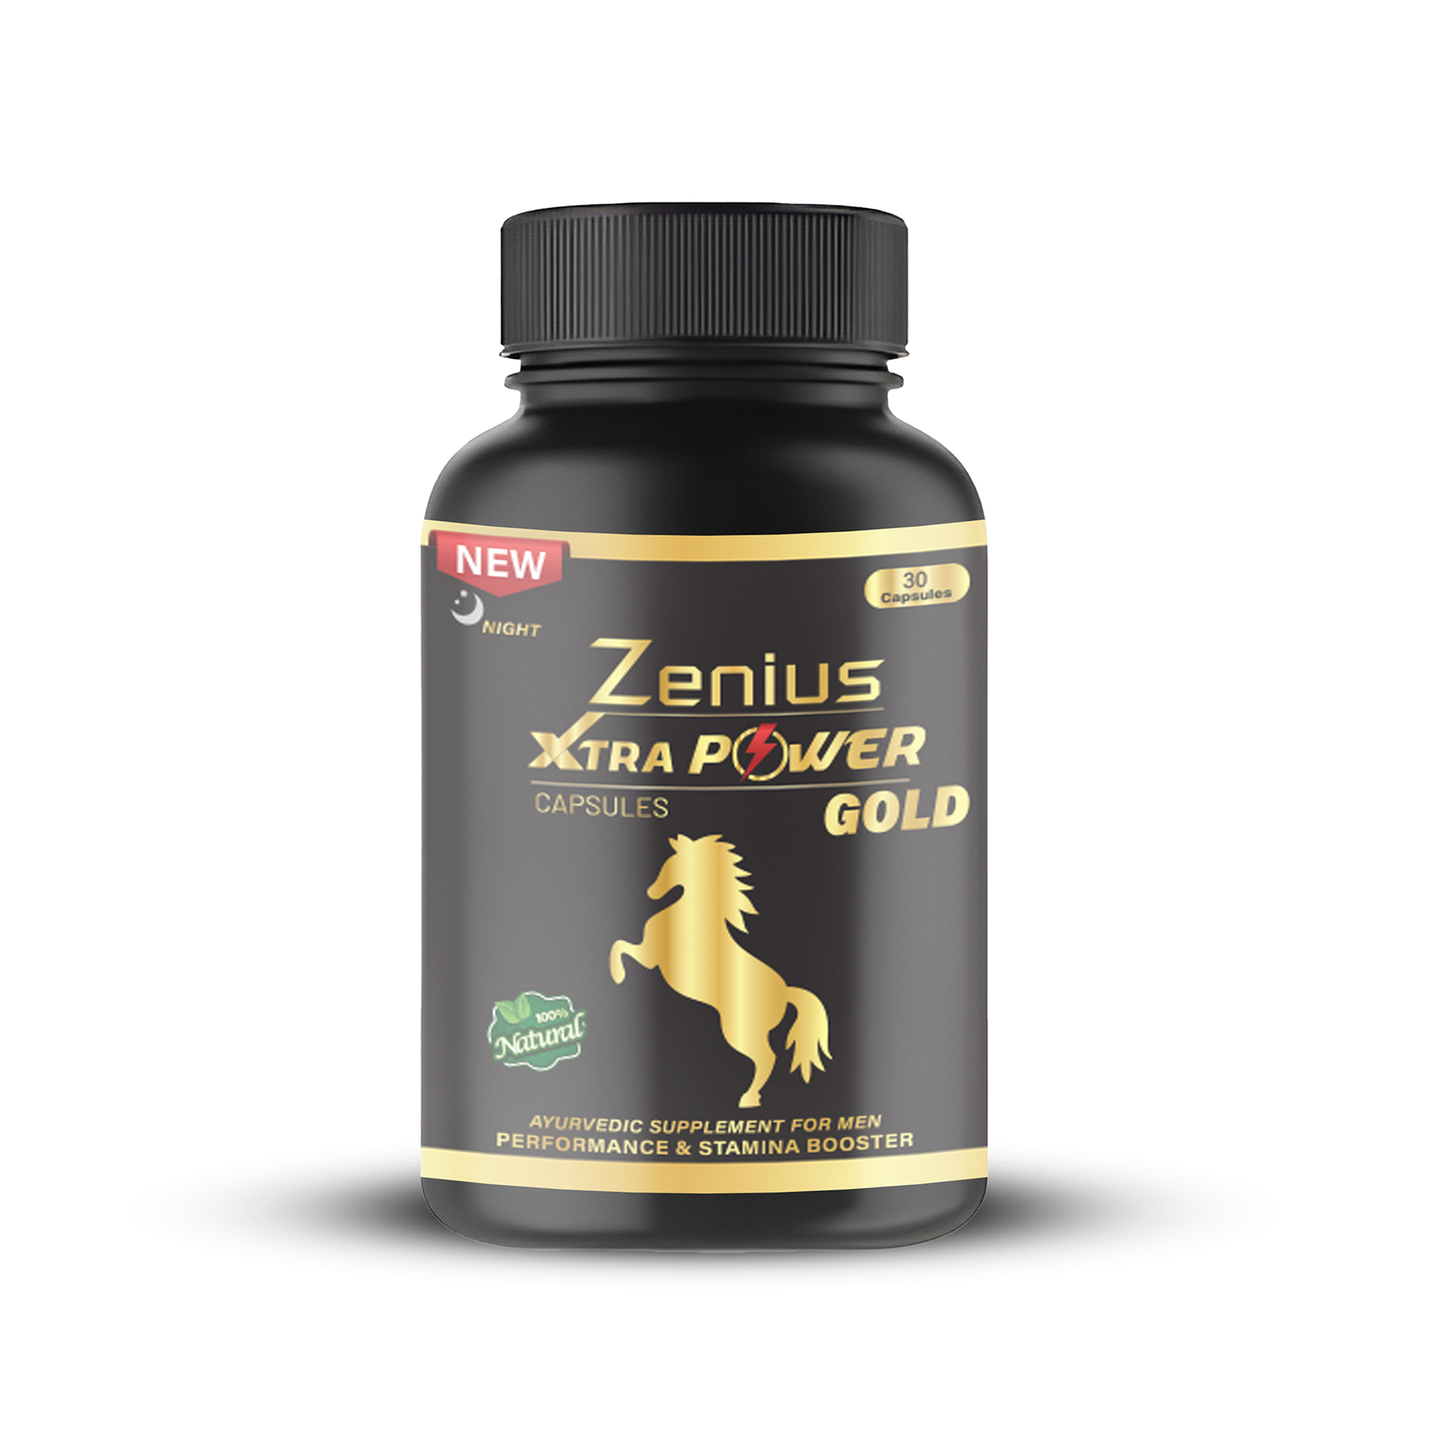 Zenius Xtra Power Gold Evening Capsule, 30 Capsules